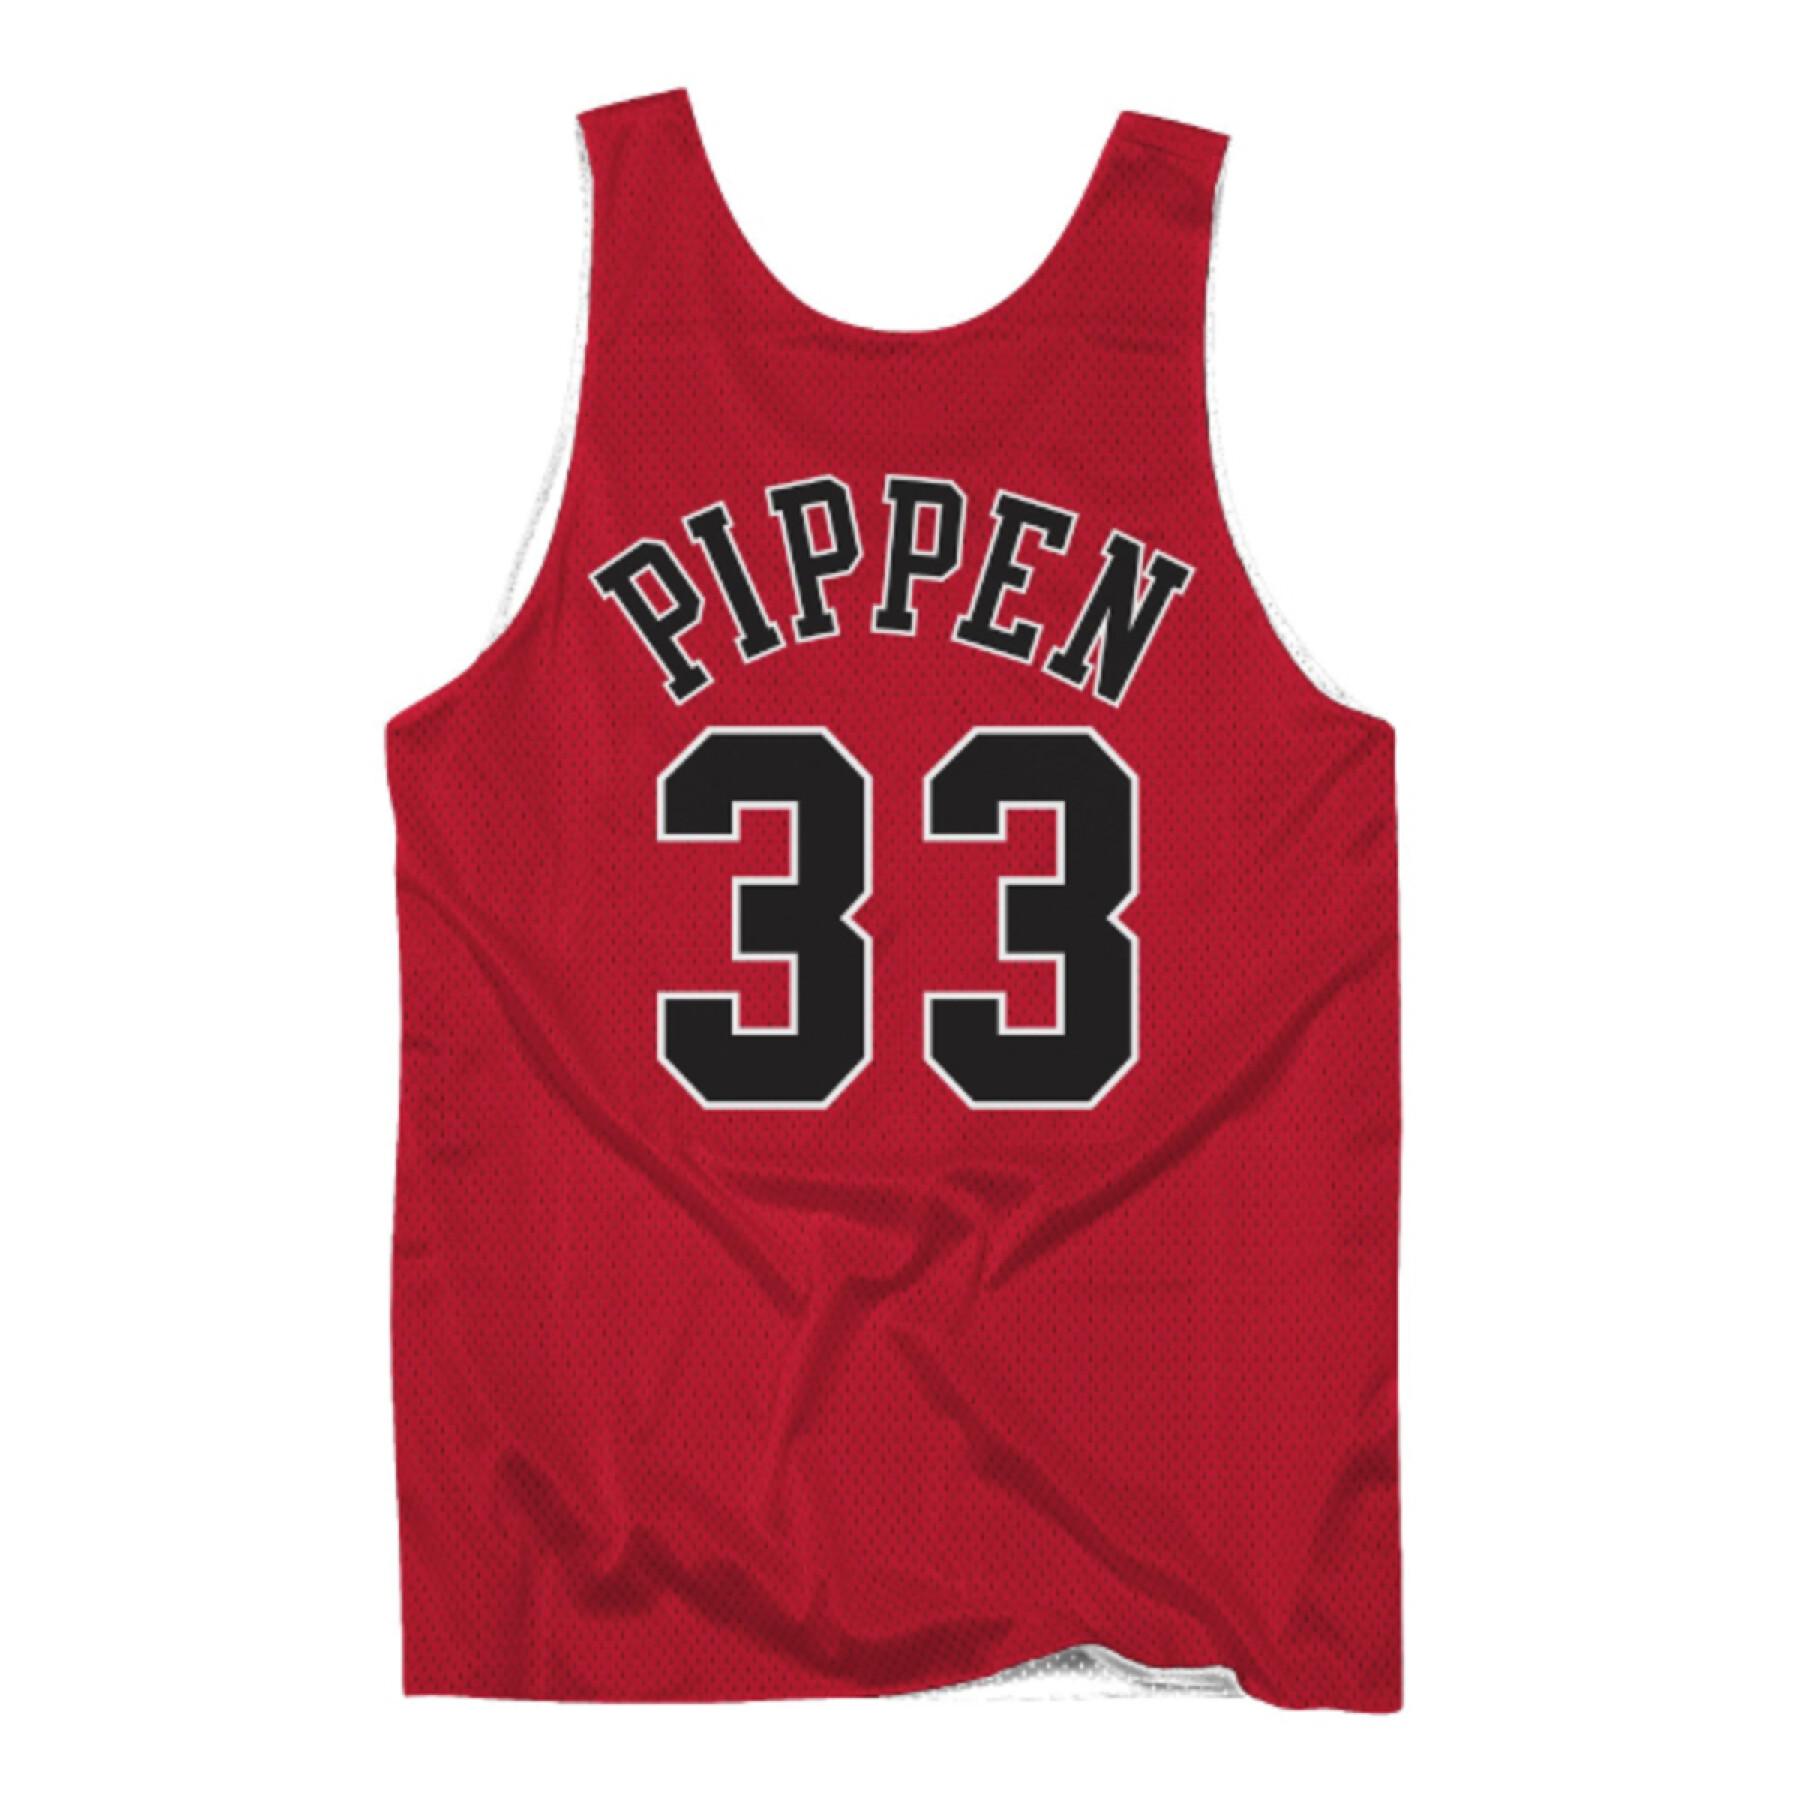 Maglia reversibile Chicago Bulls Scottie Pippen 